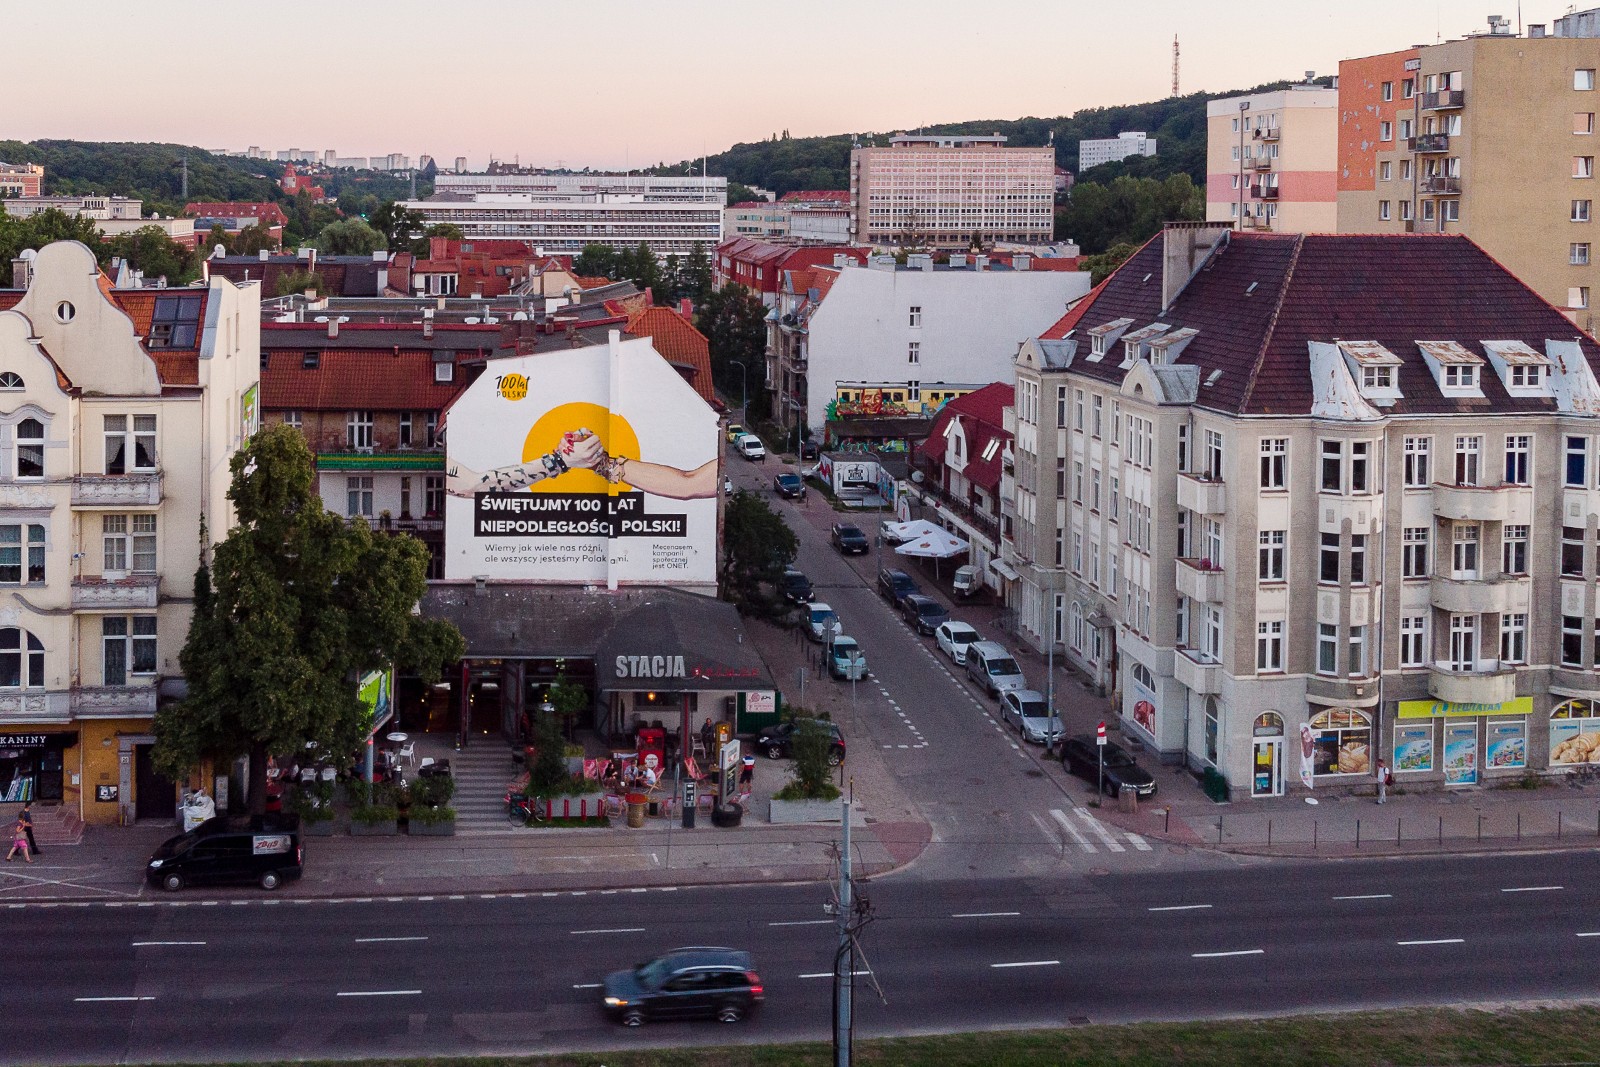 Mural reklamowy dla Onet.jpg | Świętujemy 100 lat niepodległości Polski! | Portfolio